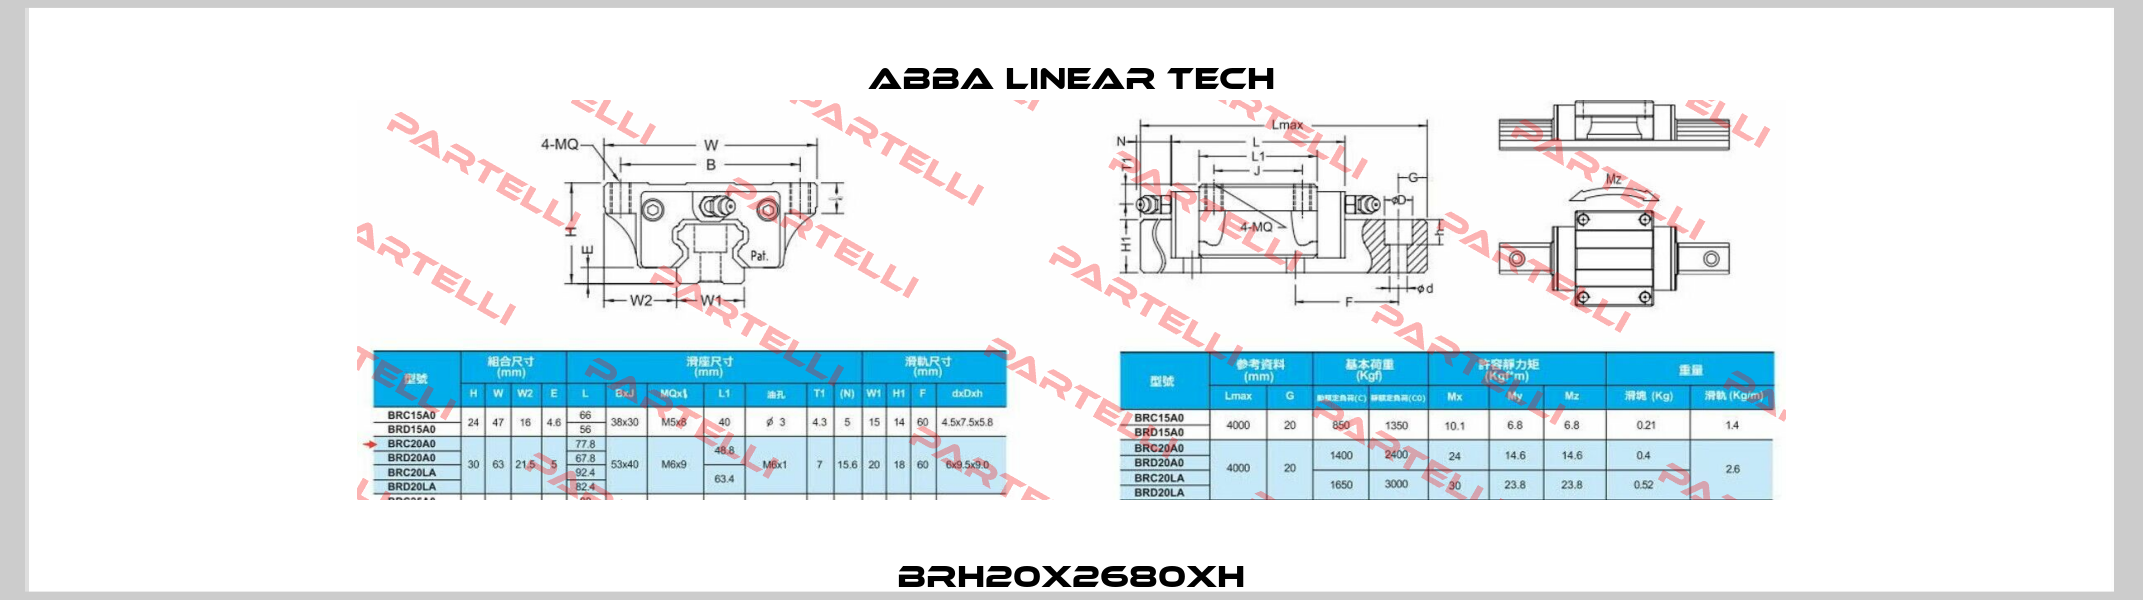 BRH20x2680xH ABBA Linear Tech